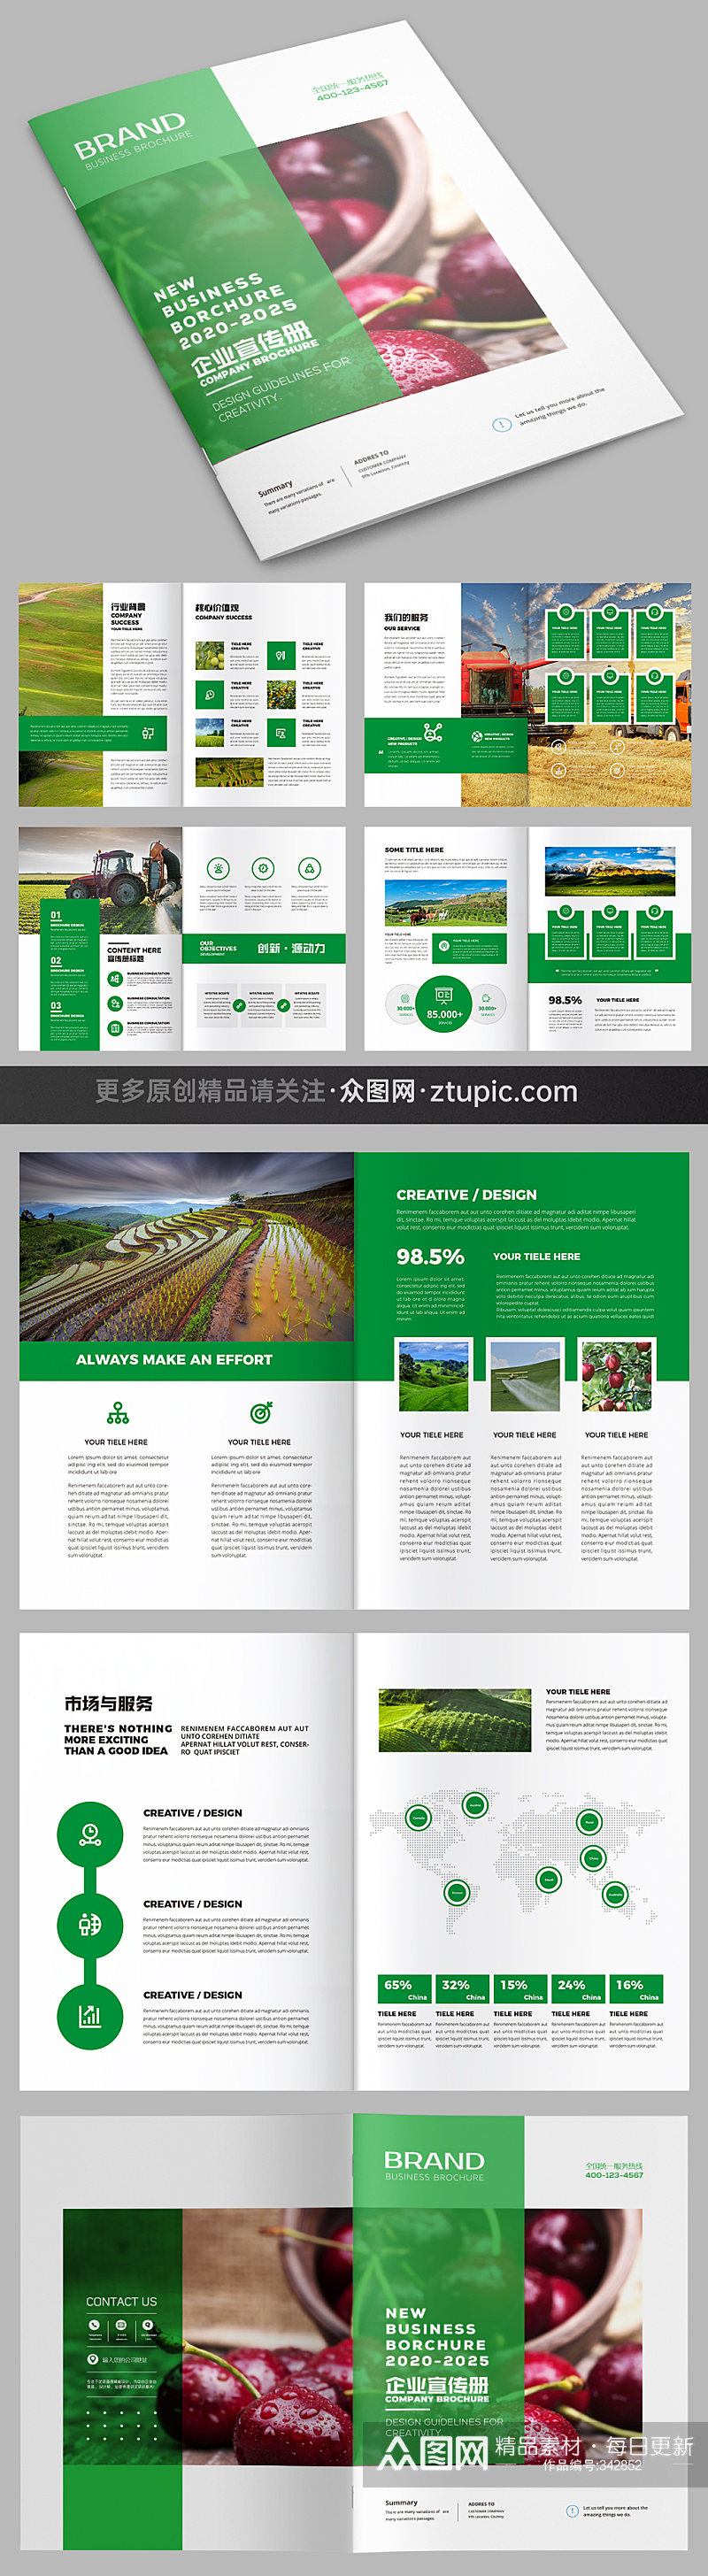 农产品画册 绿色农业宣传册设计模板素材